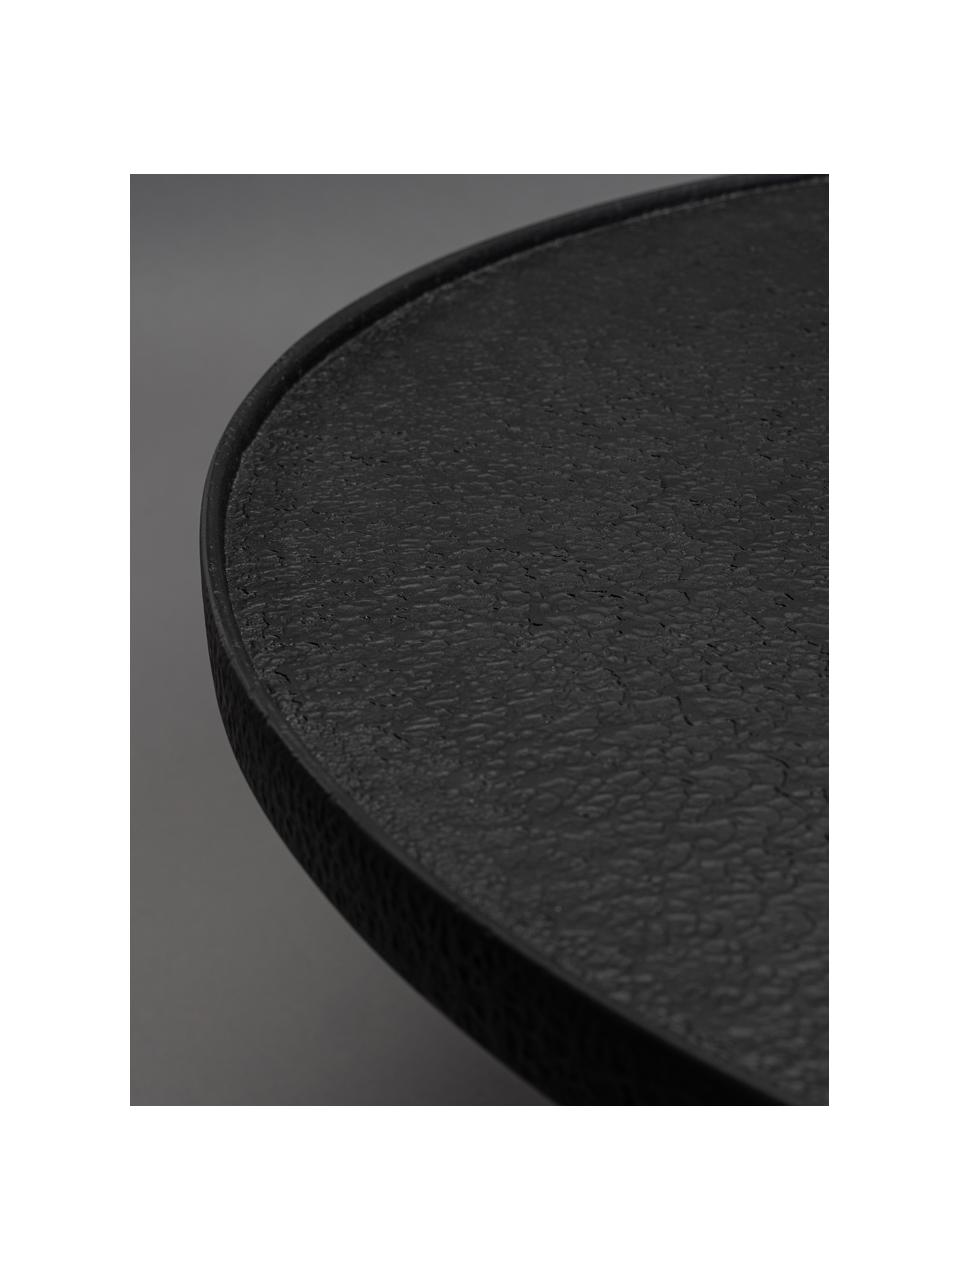 Kulatý konferenční stolek Winston, Černá, Ø 70 cm, V 36 cm